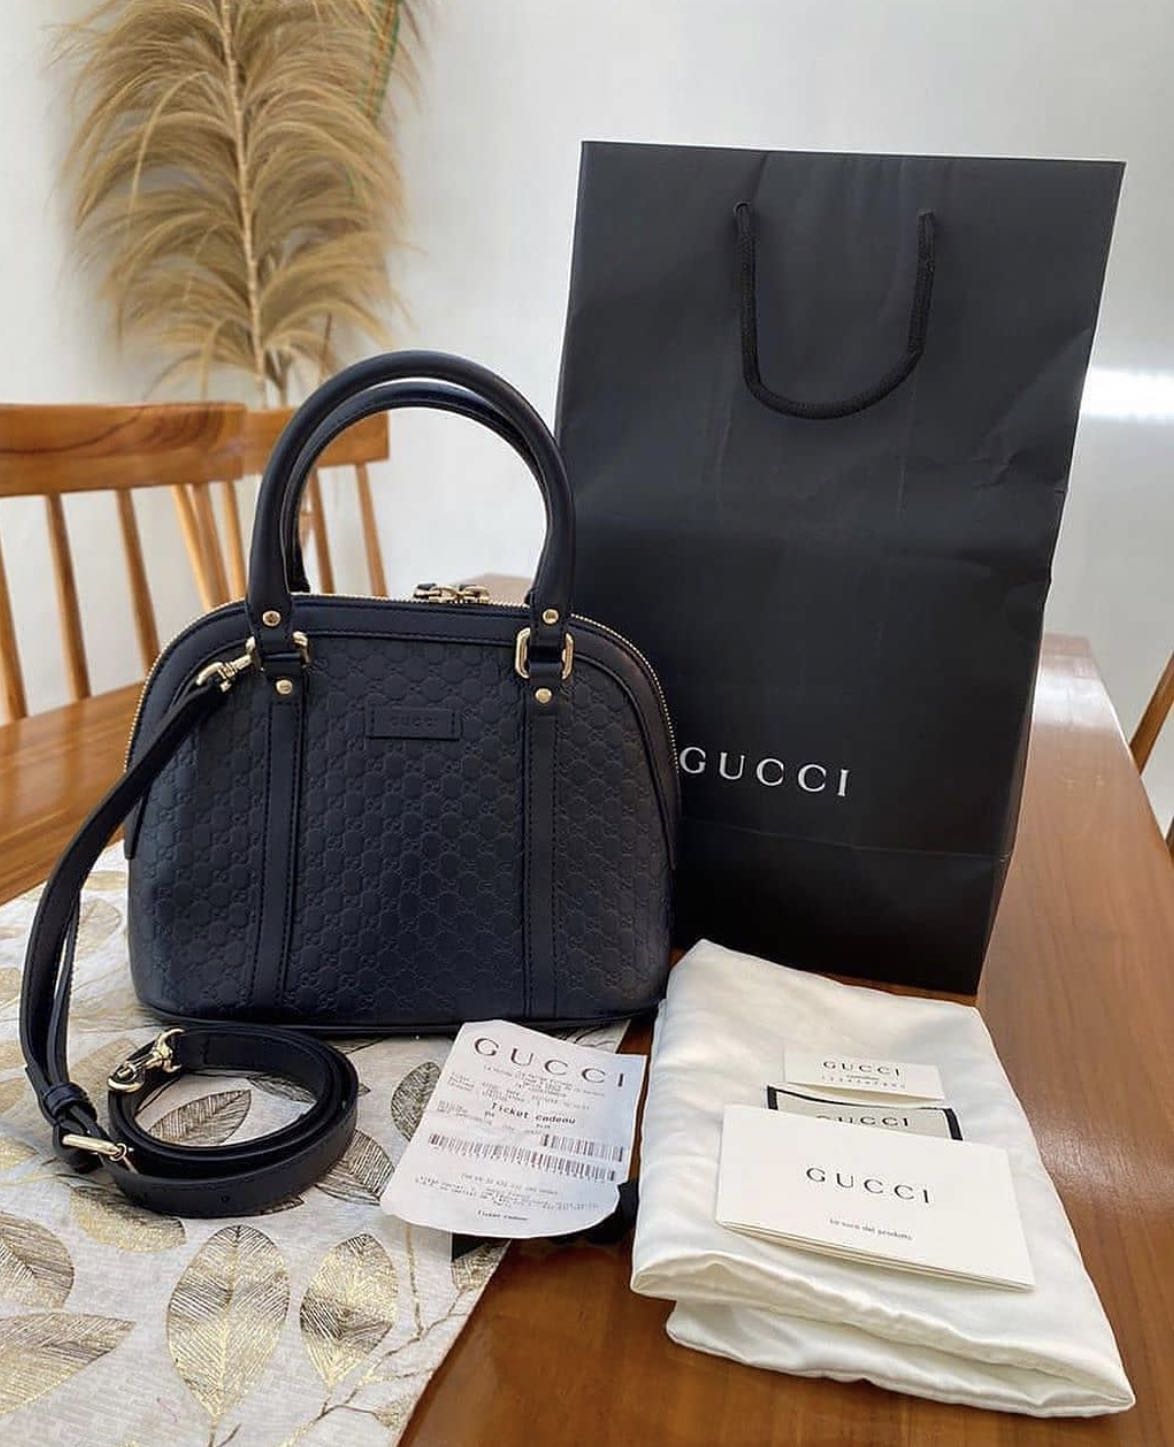 Gucci Alma Small - AUTHENTIC ORIGINAL Preloved Bag